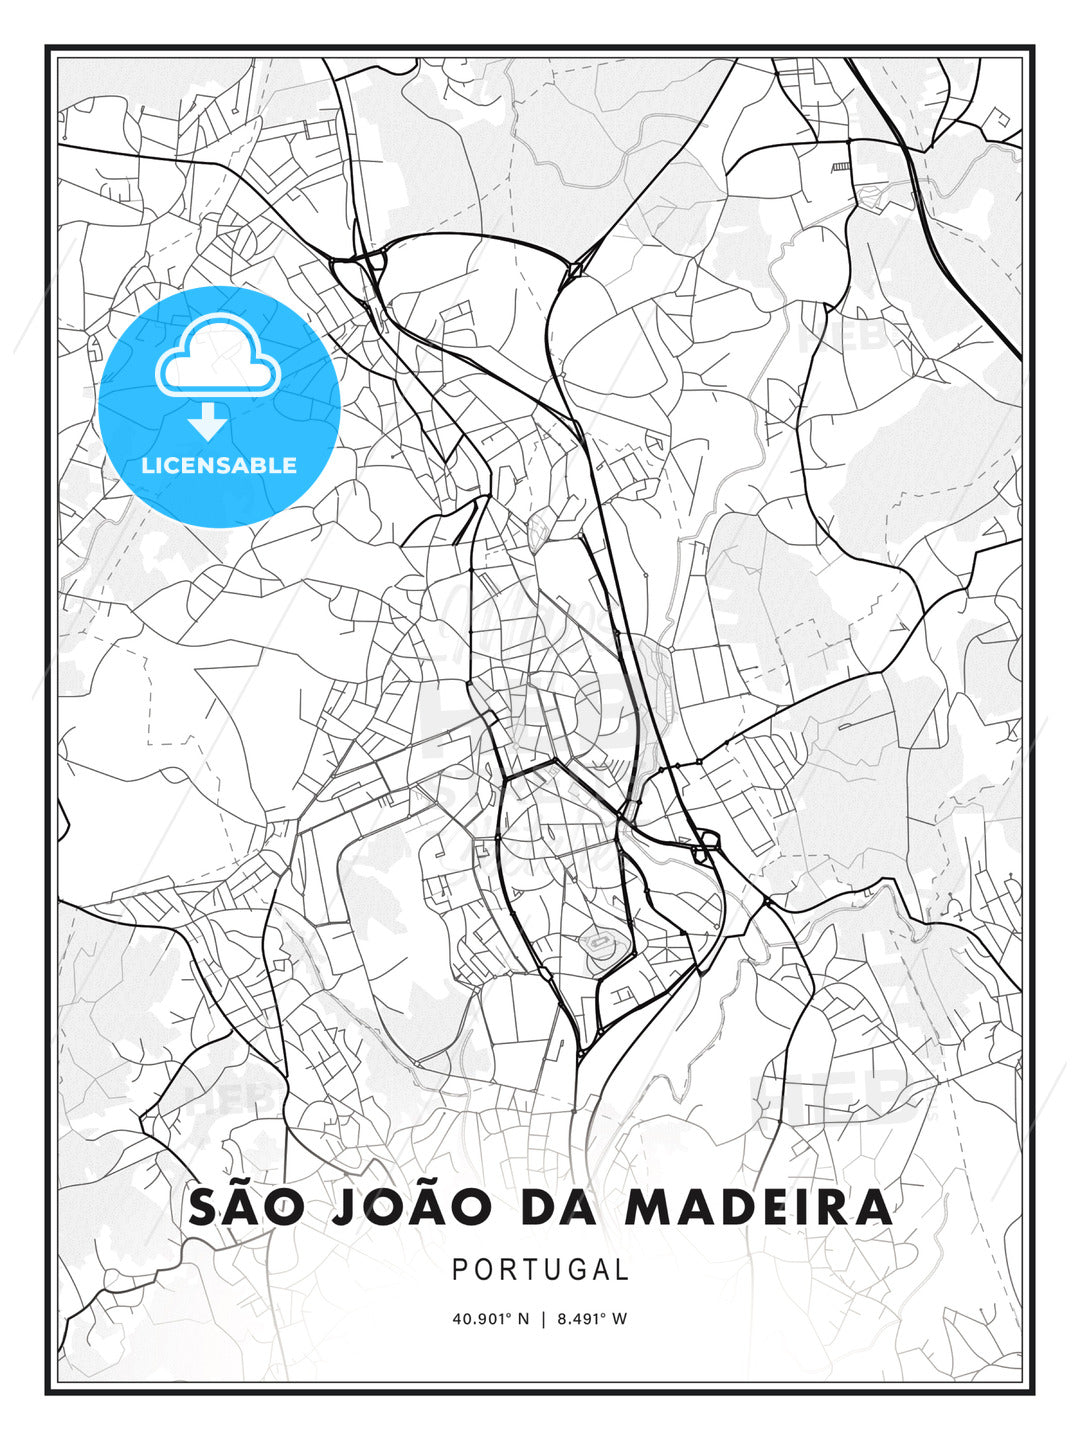 São João da Madeira, Portugal, Modern Print Template in Various Formats - HEBSTREITS Sketches